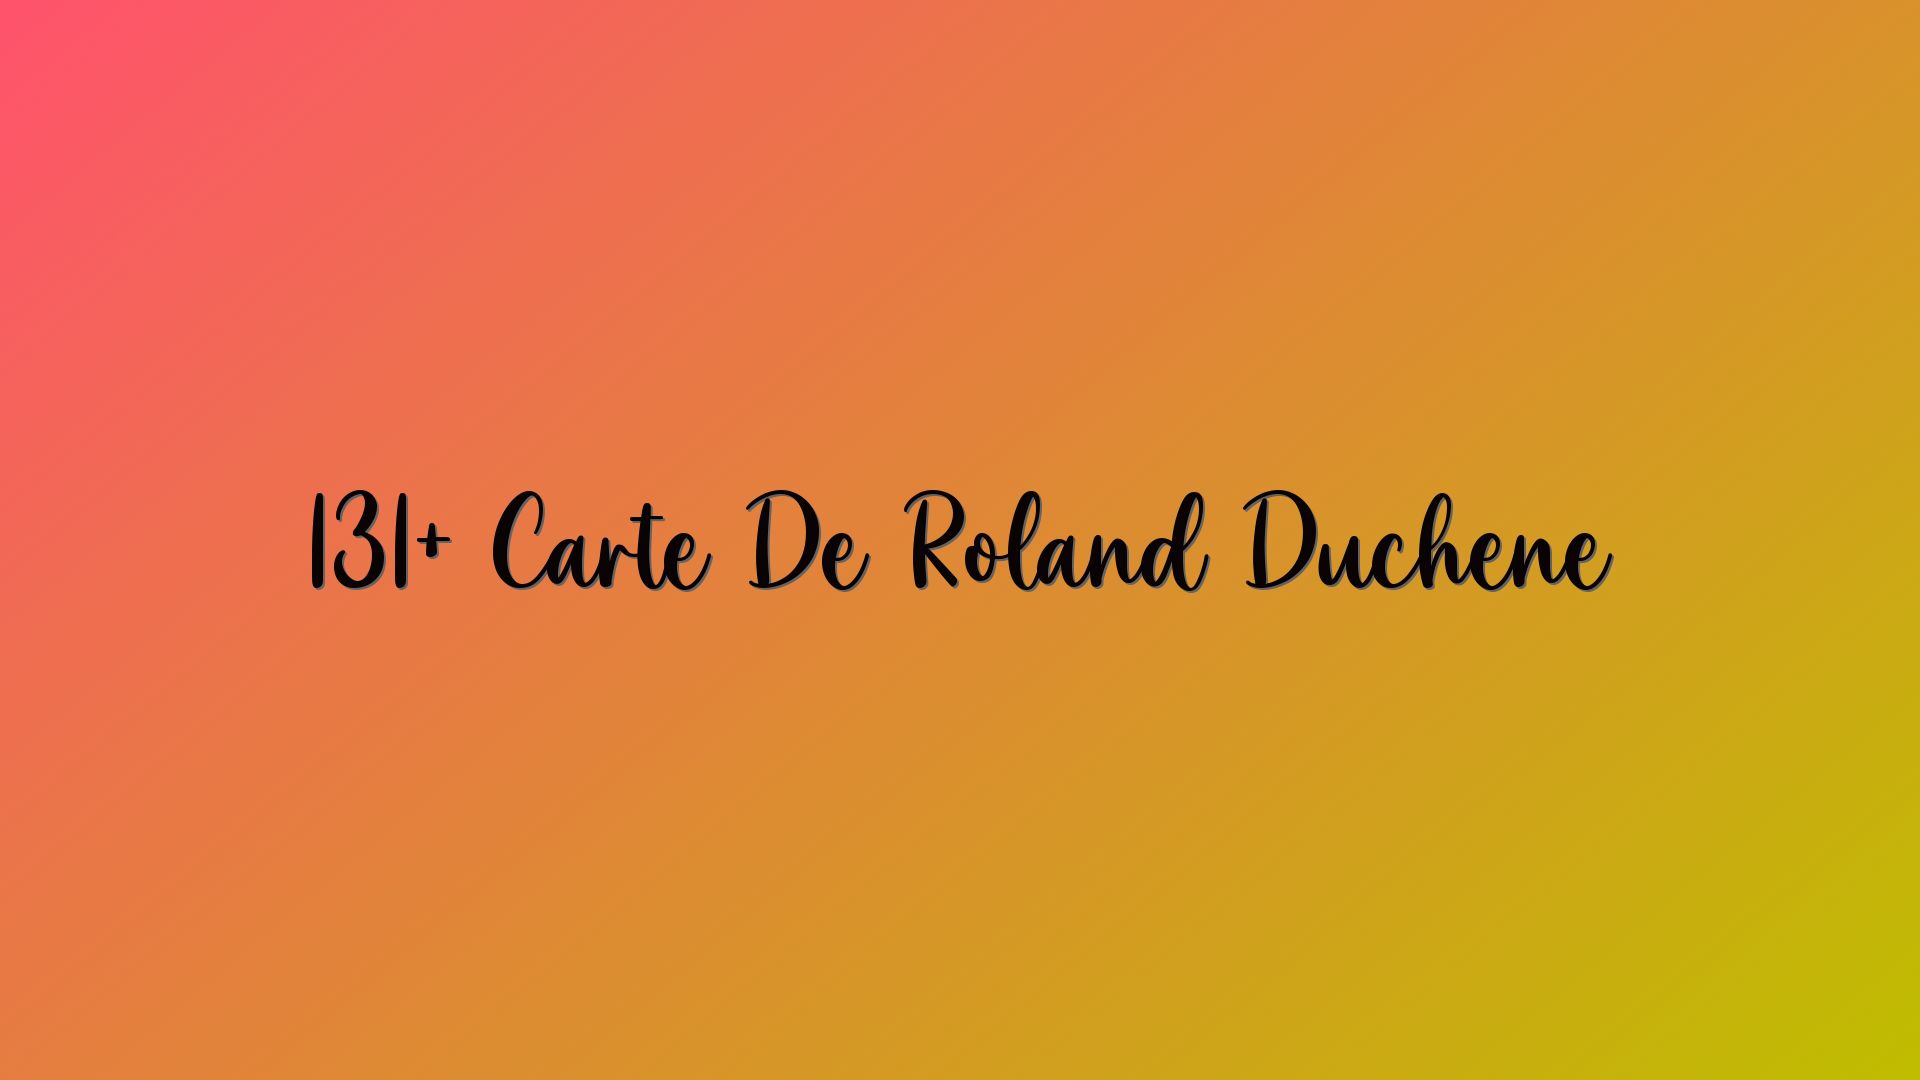 131+ Carte De Roland Duchene